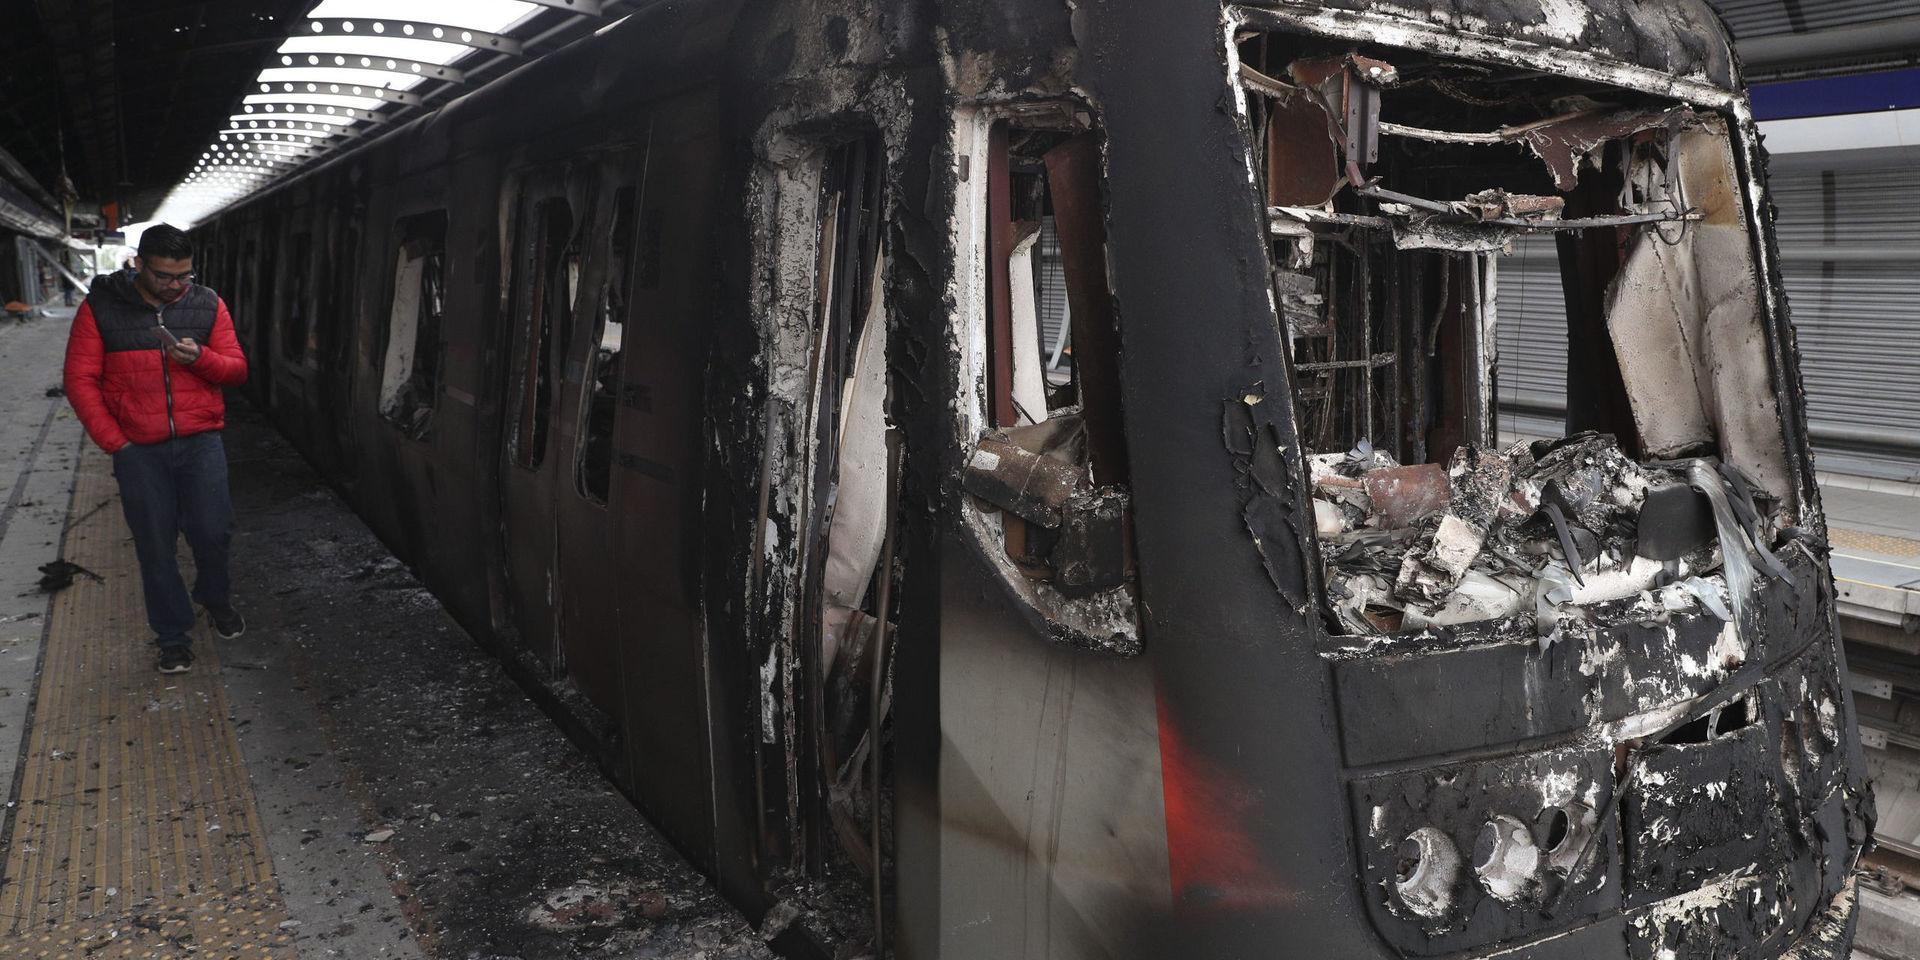 Flera bränder har anlagts i samband med protesterna i Santiago. Här är en tunnelbanevagn som bränts. 